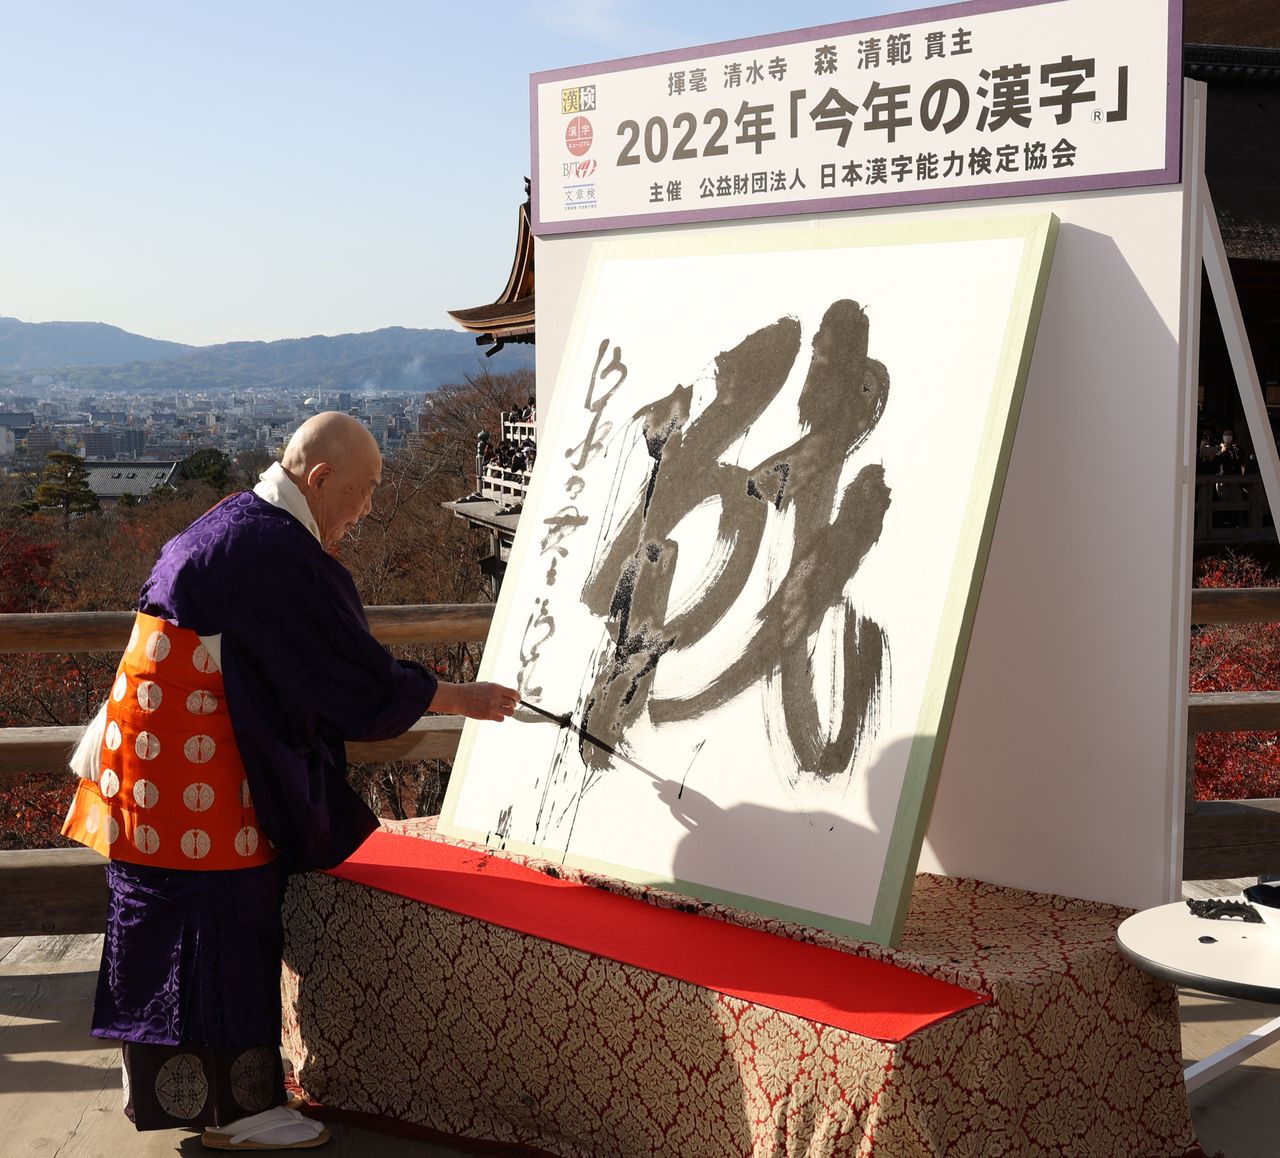 Настоятель храма Киёмидзу-дэра пишет иероглиф 戦 («икуса»), выбранный знаком 2022 года, 12 декабря 2022 г., город Киото, район Хигасияма (© Jiji Press)